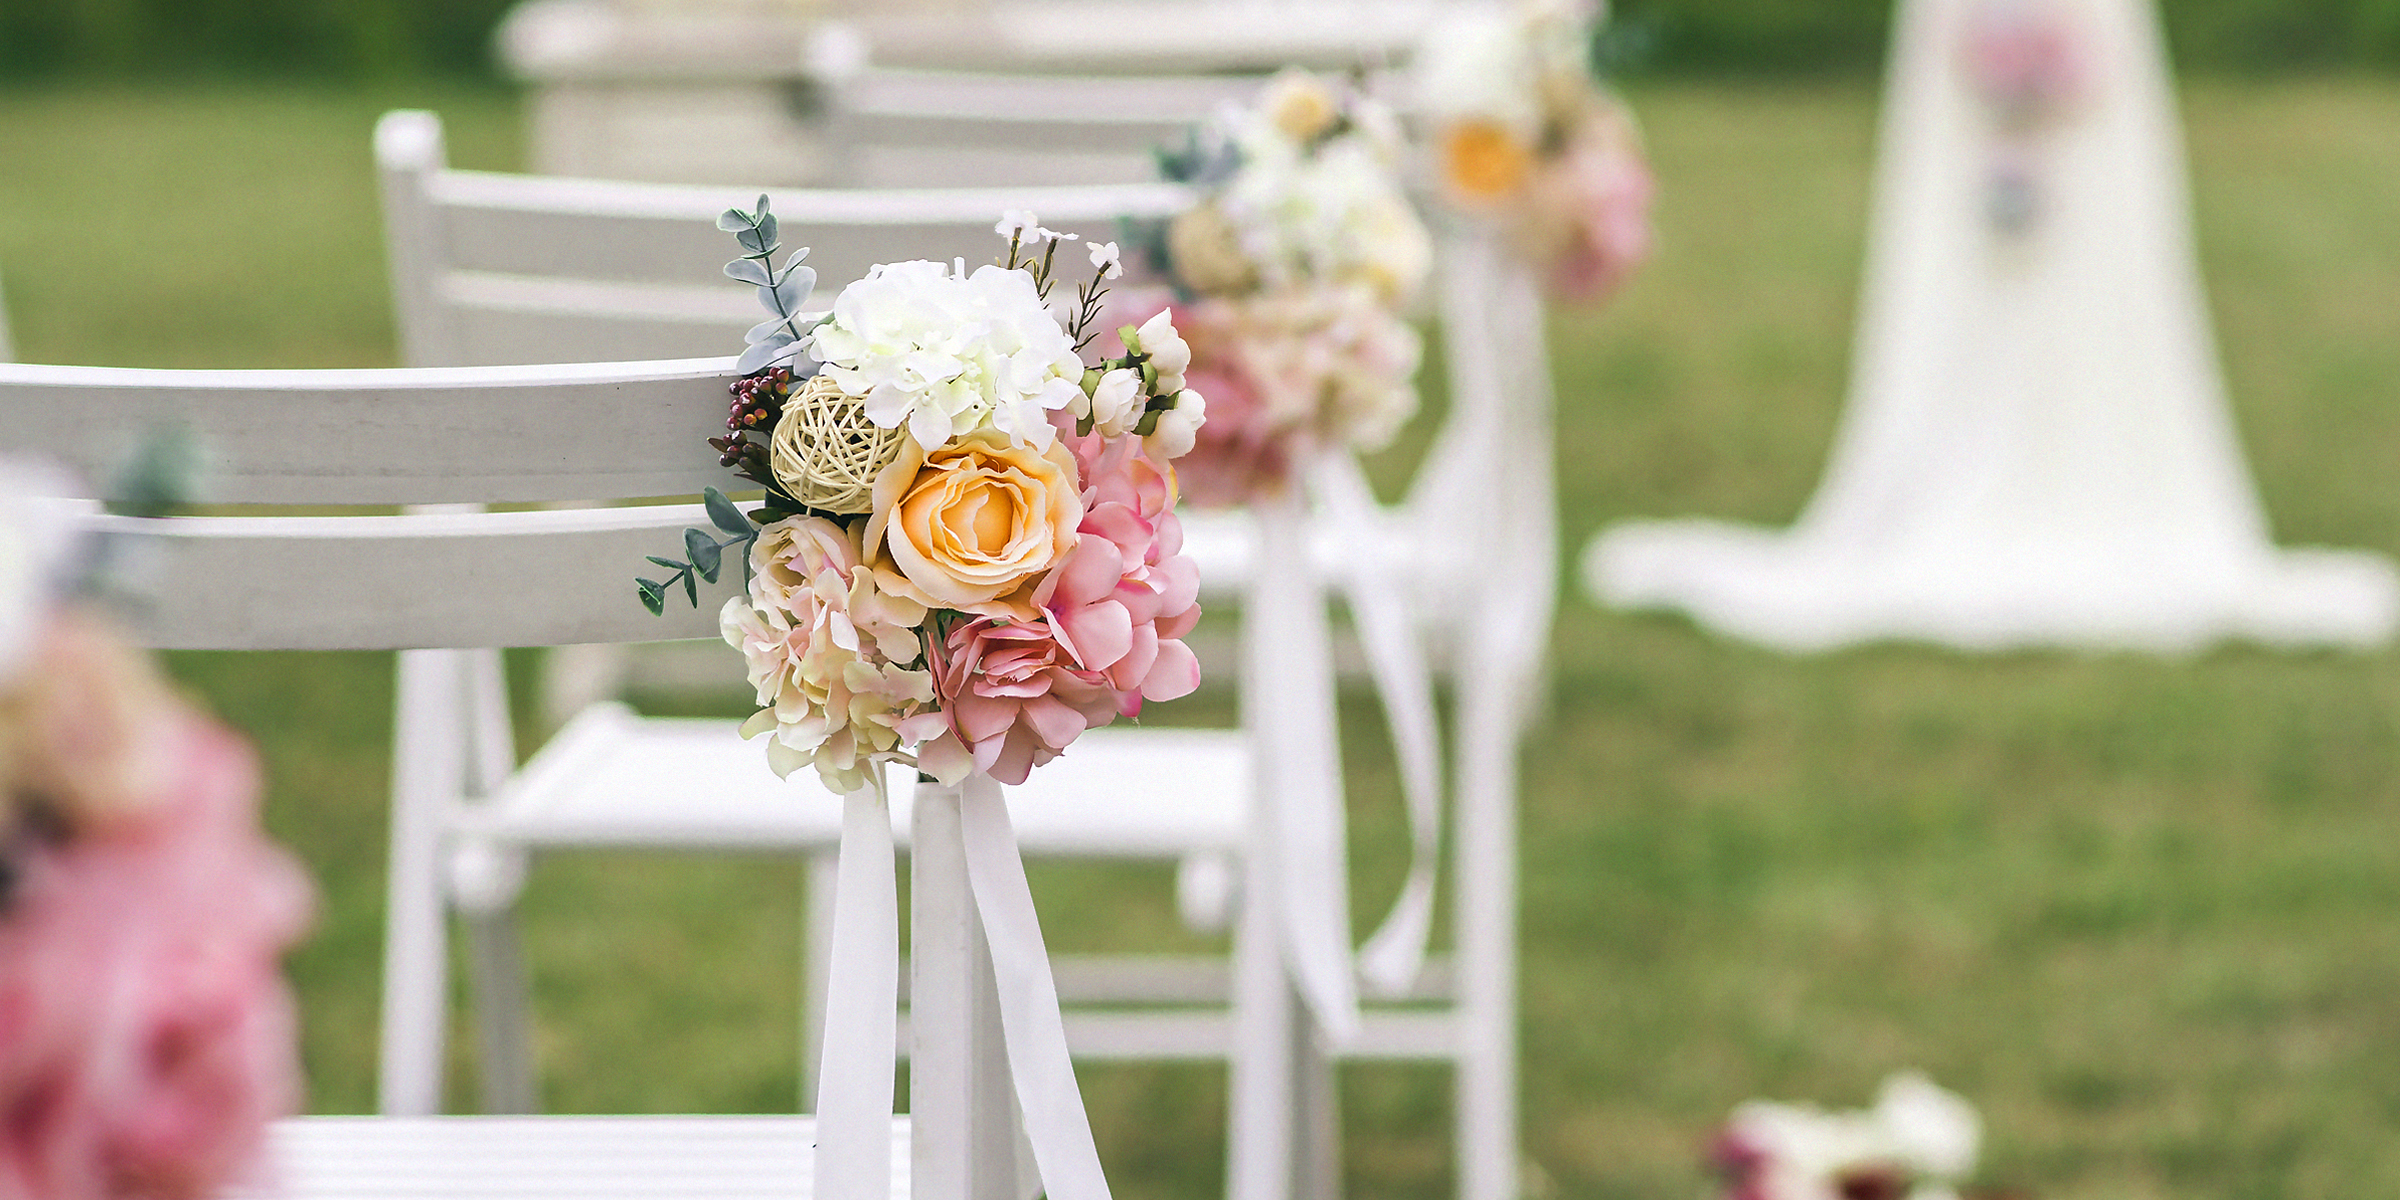 Une chaise avec des fleurs lors d'un mariage | Source : Shutterstock